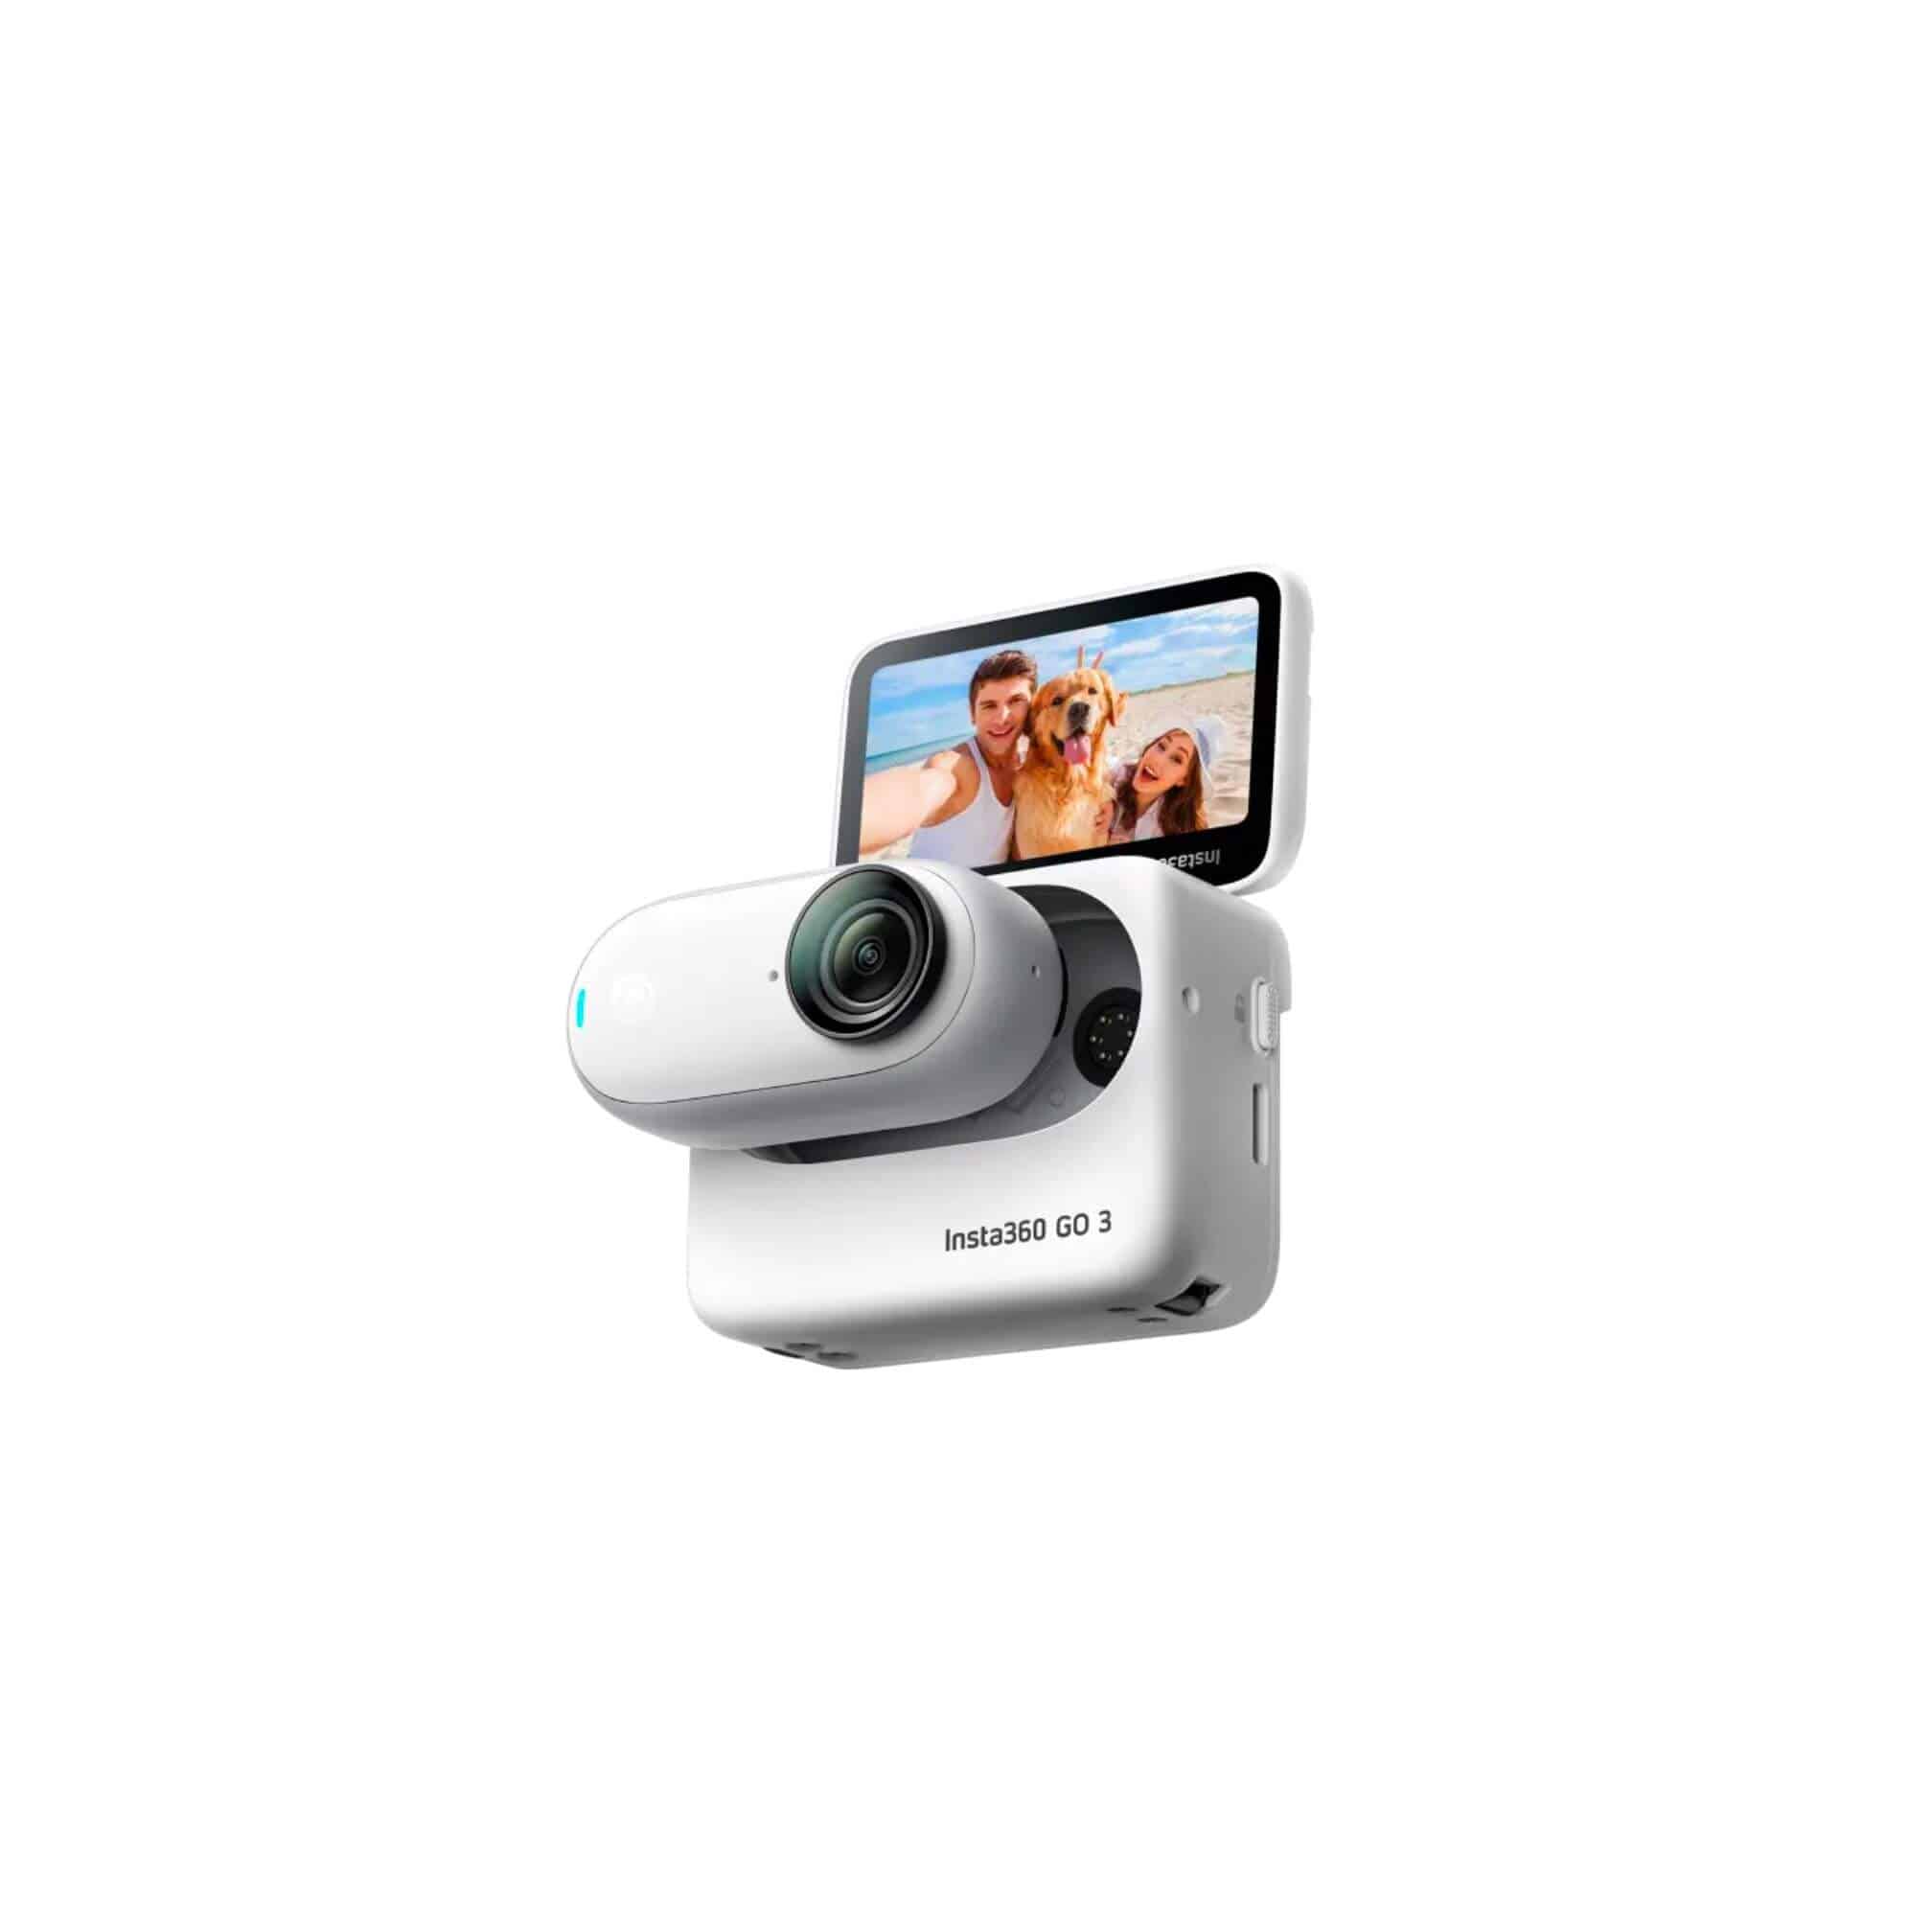 Insta360 X3 Pocket 360 Action Camera - Urban Gadgets PH